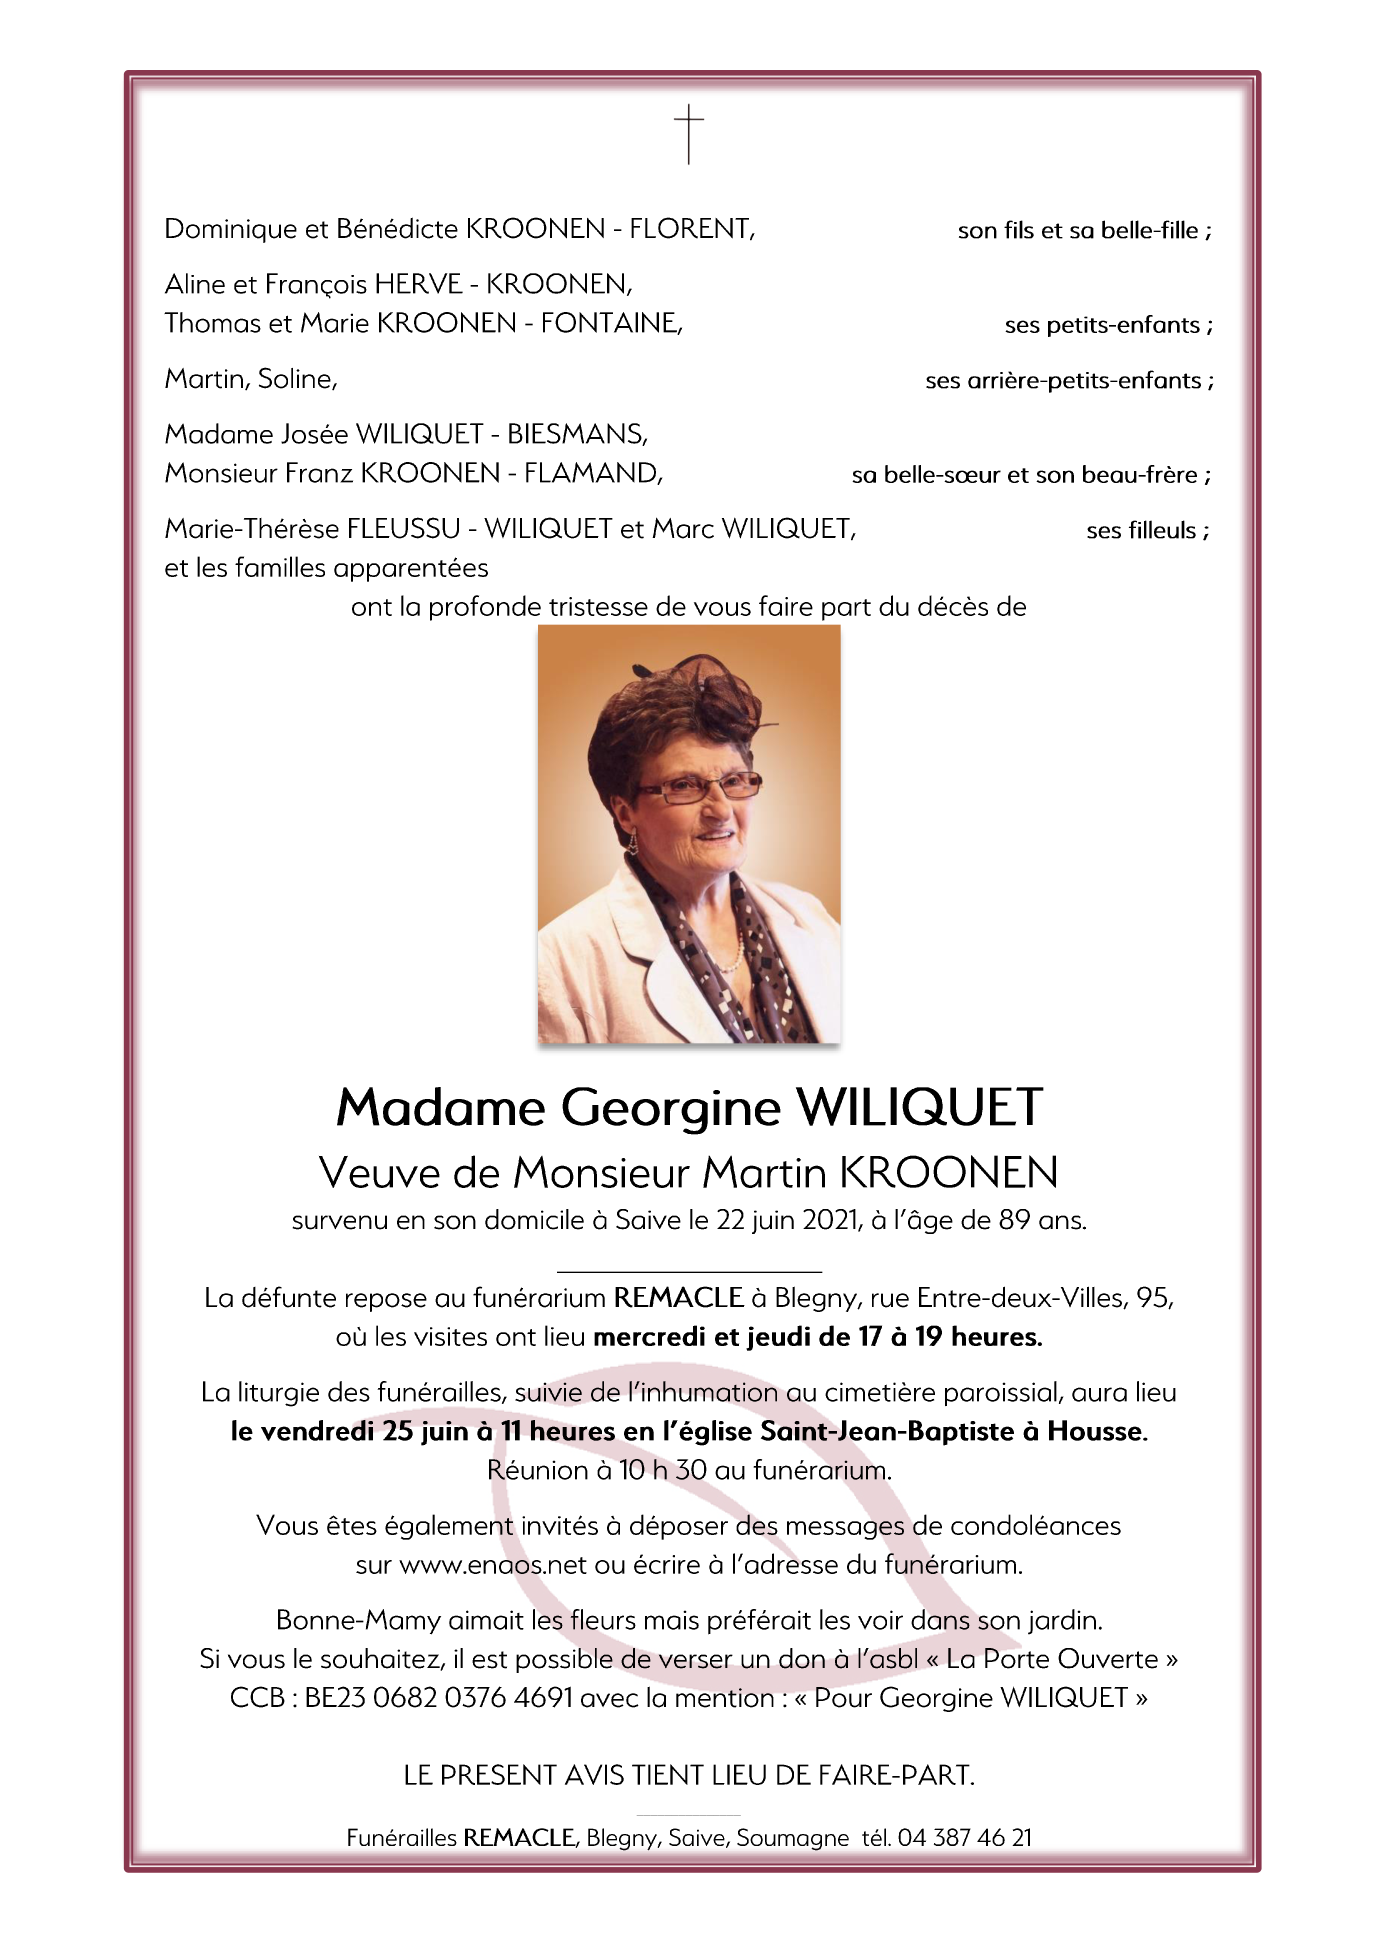 Death of Madame Georgine WILIQUET (22/06/2021), Annonce nécrologique